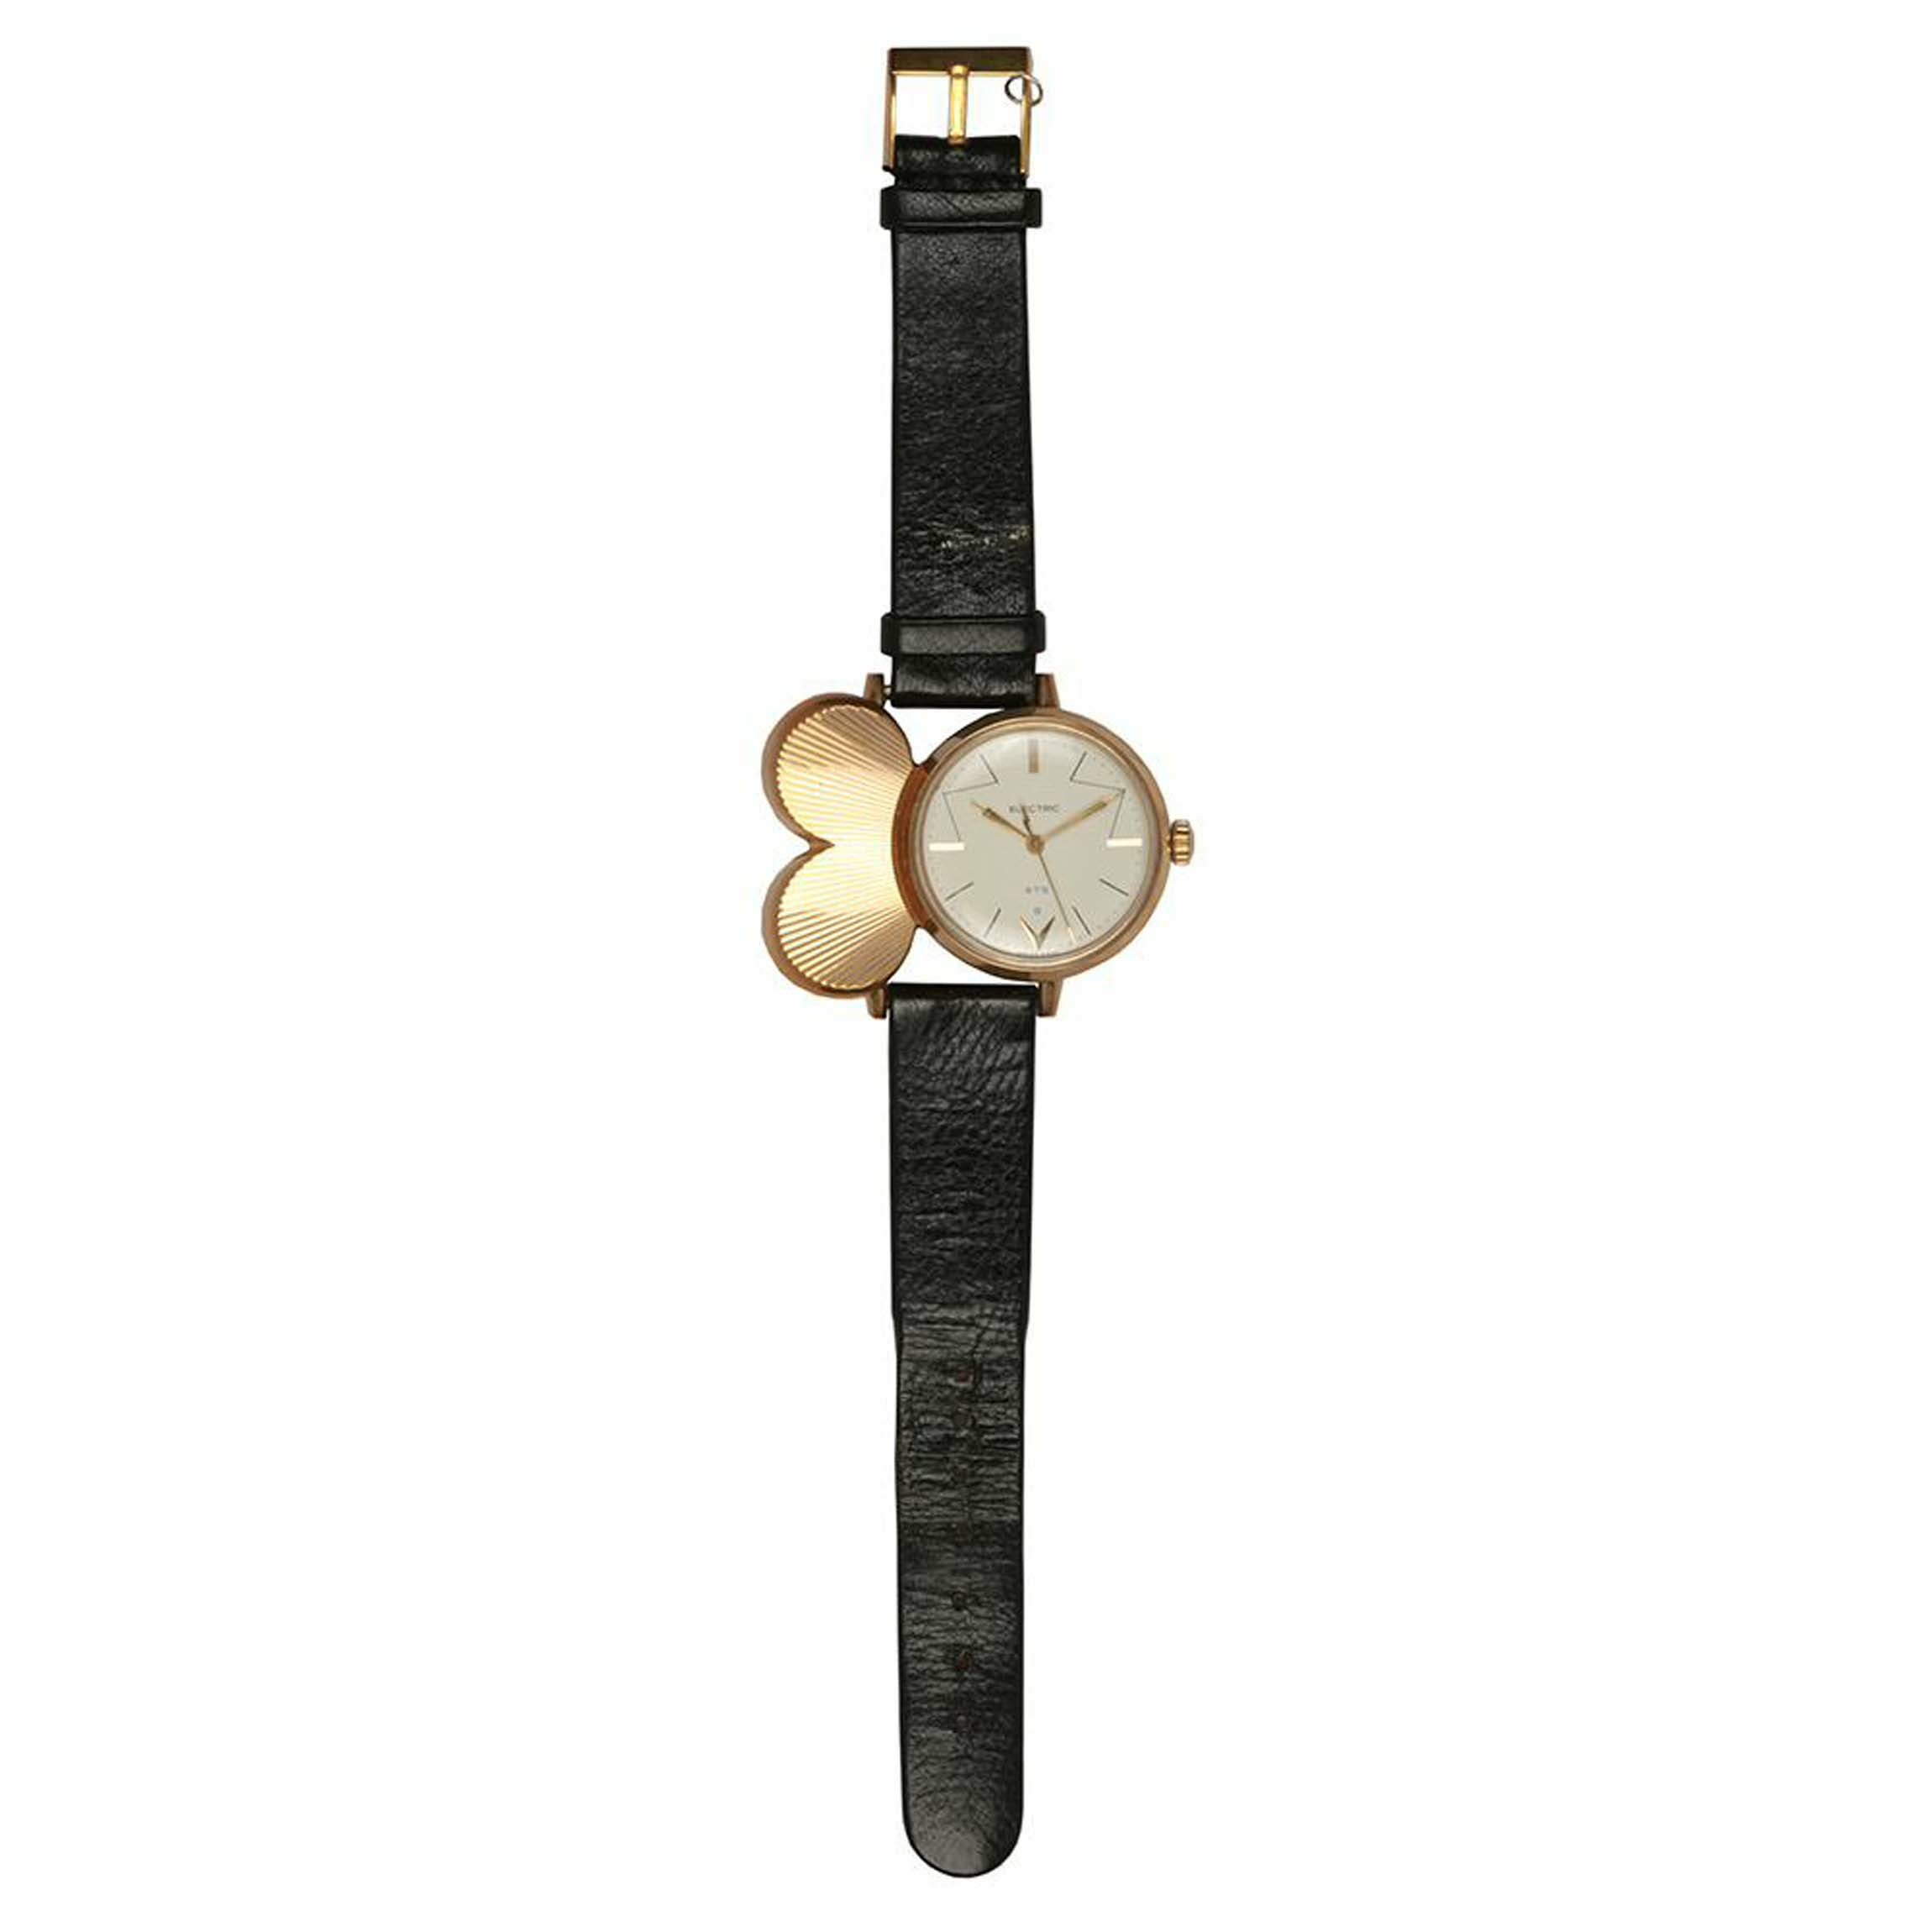 Armbanduhr, Landeron, Schweiz, um 1961 (Deutsches Uhrenmuseum CC BY-SA)